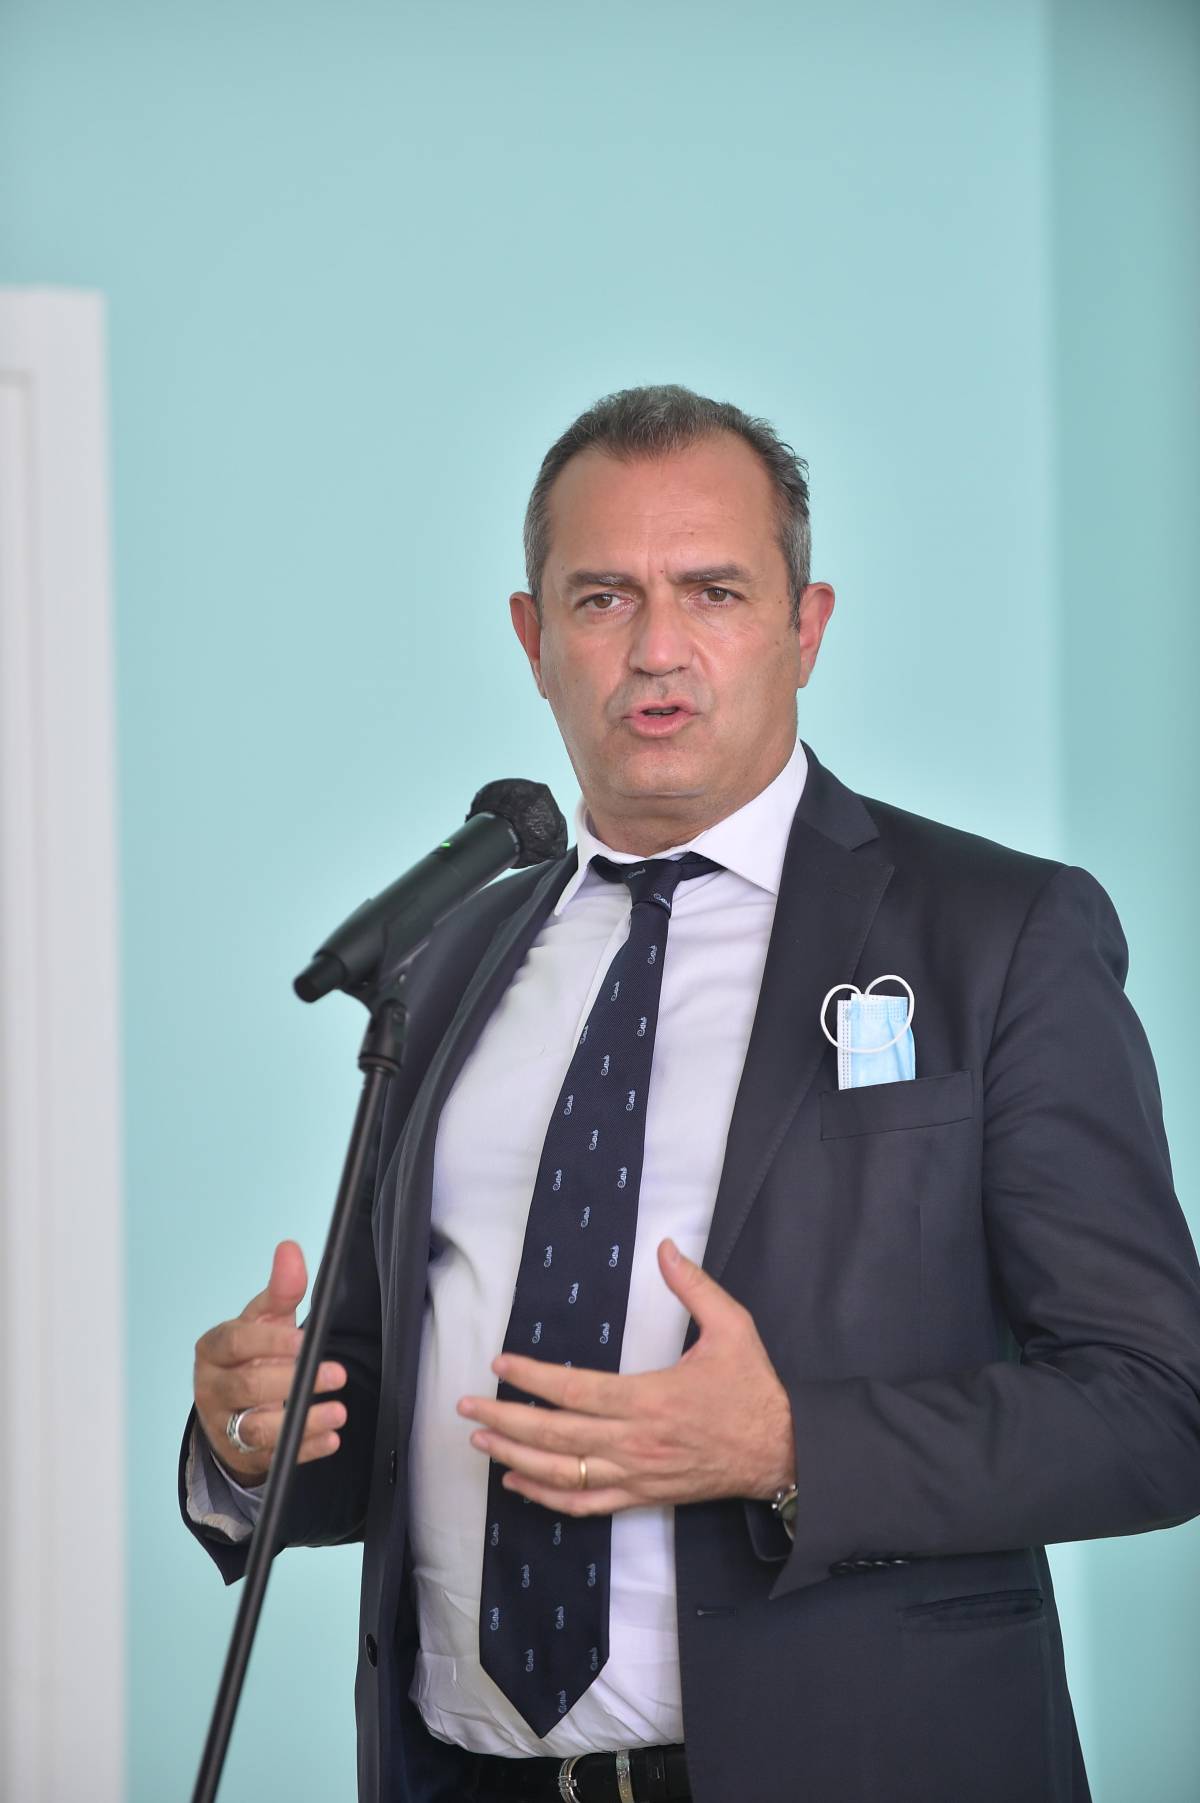 L’ex sindaco De Magistris attacca Manfredi: "Una fitta rete di silenzi avvolge da mesi la città"